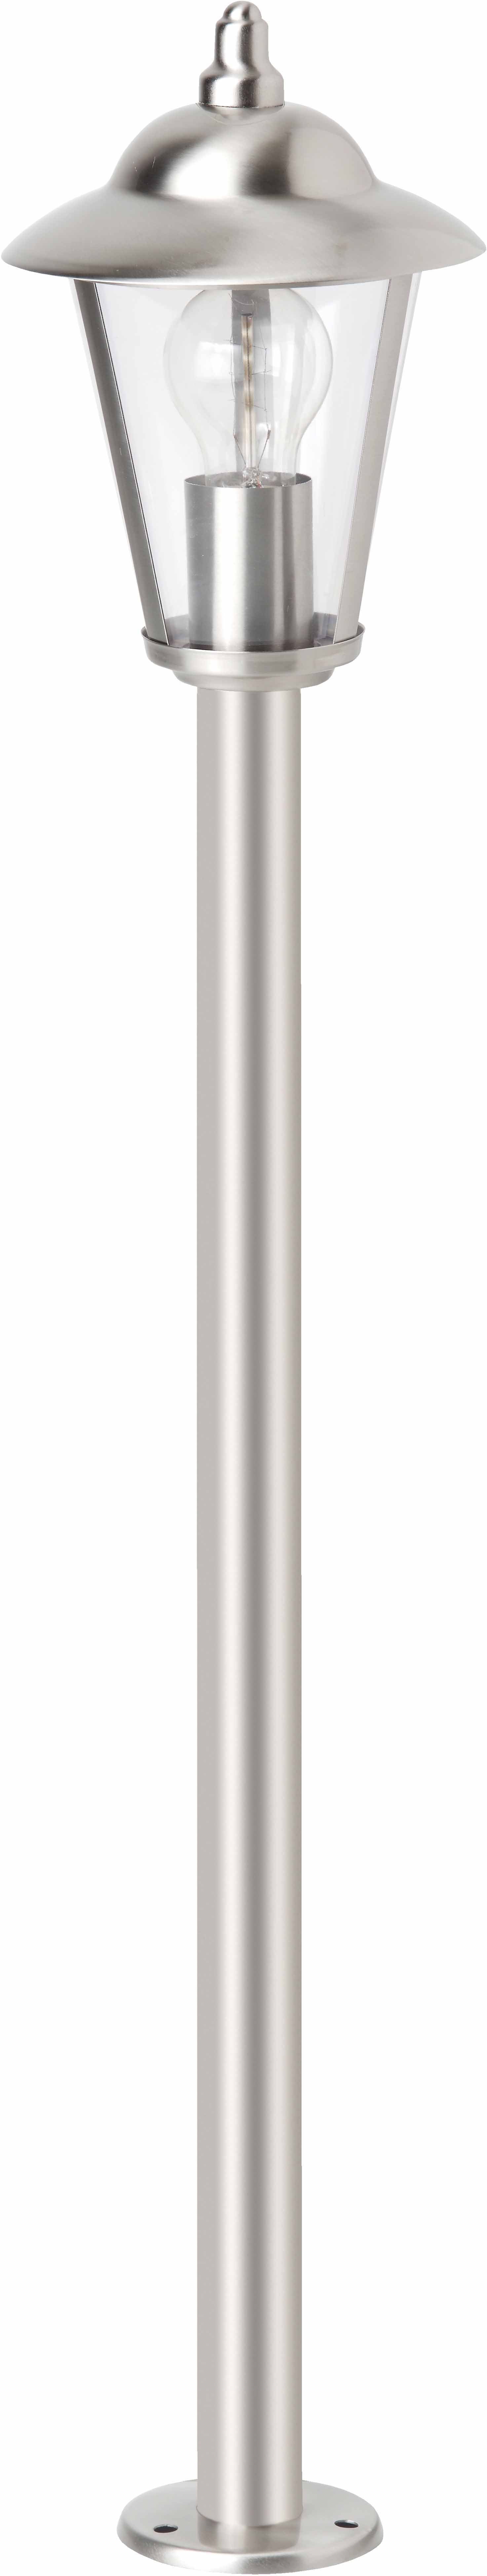 Brilliant Außen-Stehlampe NEIL, ohne Leuchtmittel, 90 cm Höhe, Ø 17 cm, E27,  IP44, Metall/Kunststoff, edelstahl